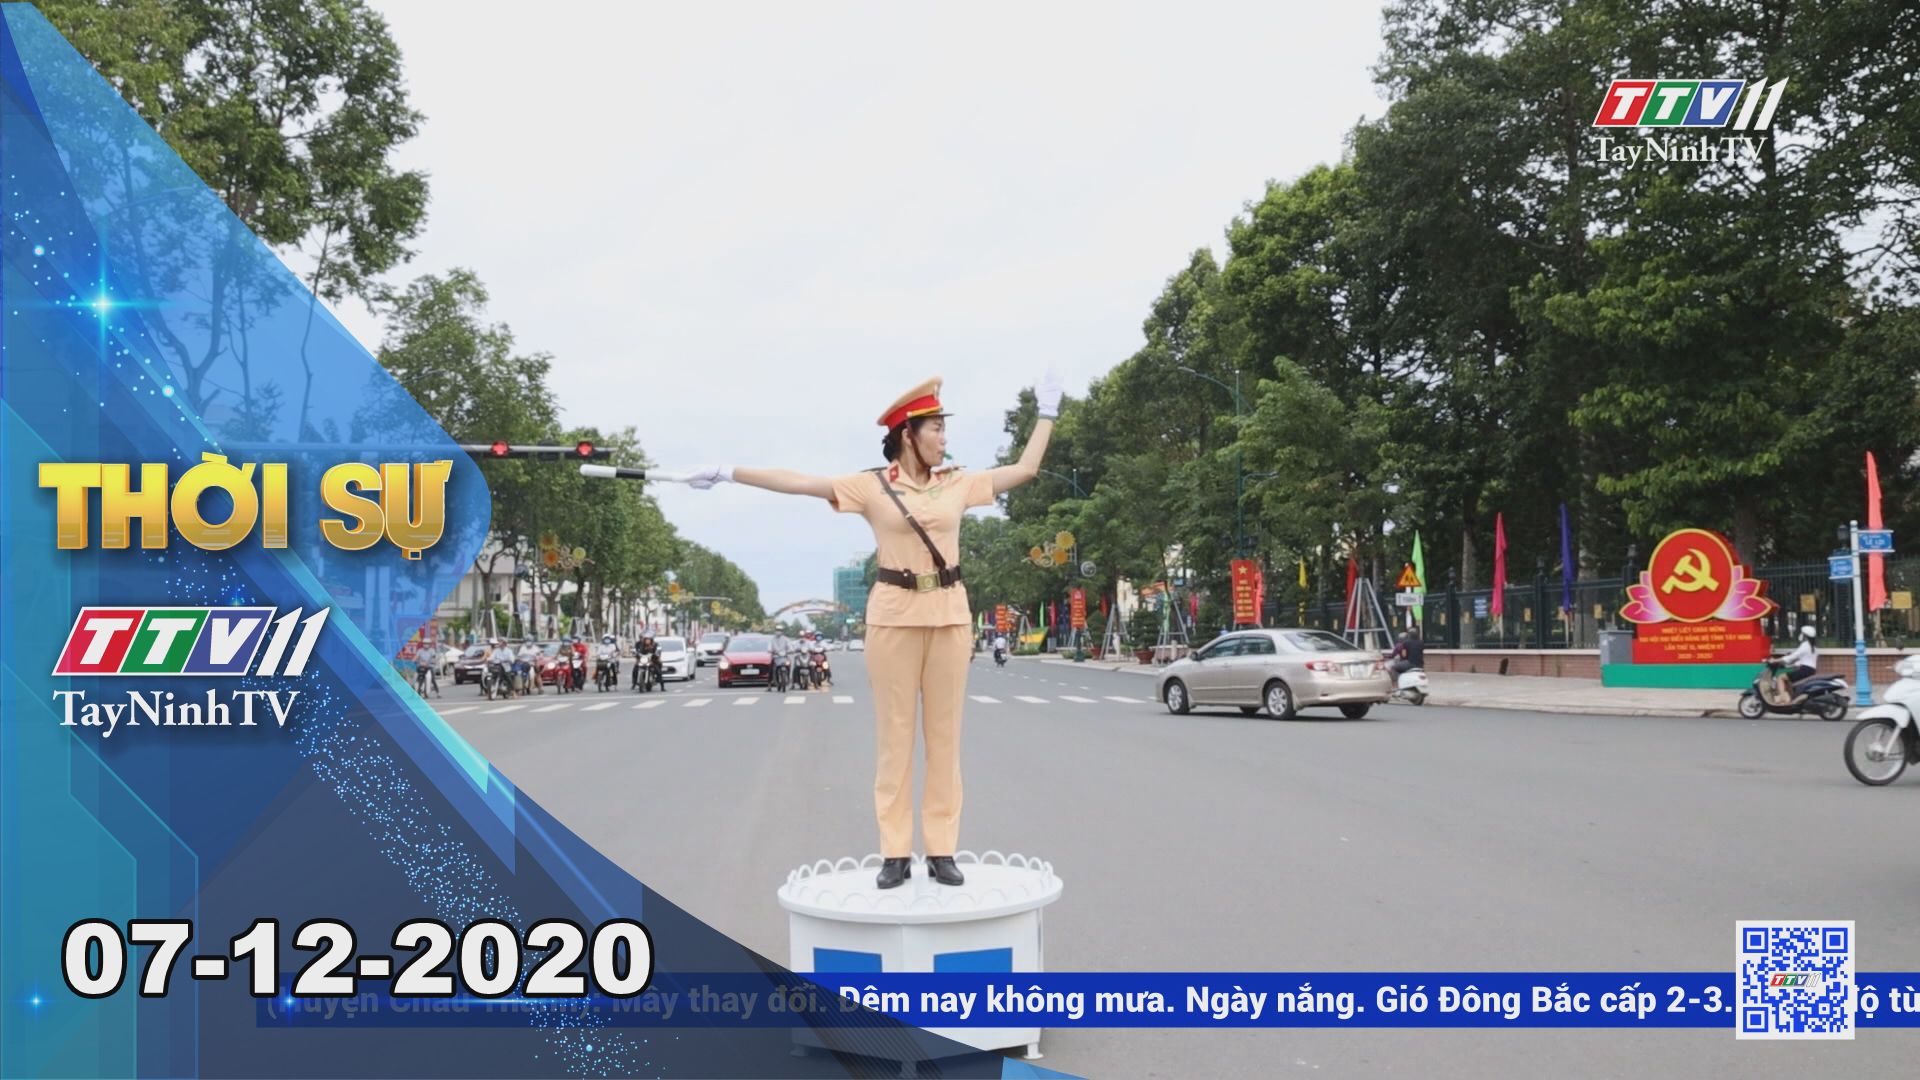 Thời sự Tây Ninh 07-12-2020 | Tin tức hôm nay | TayNinhTV